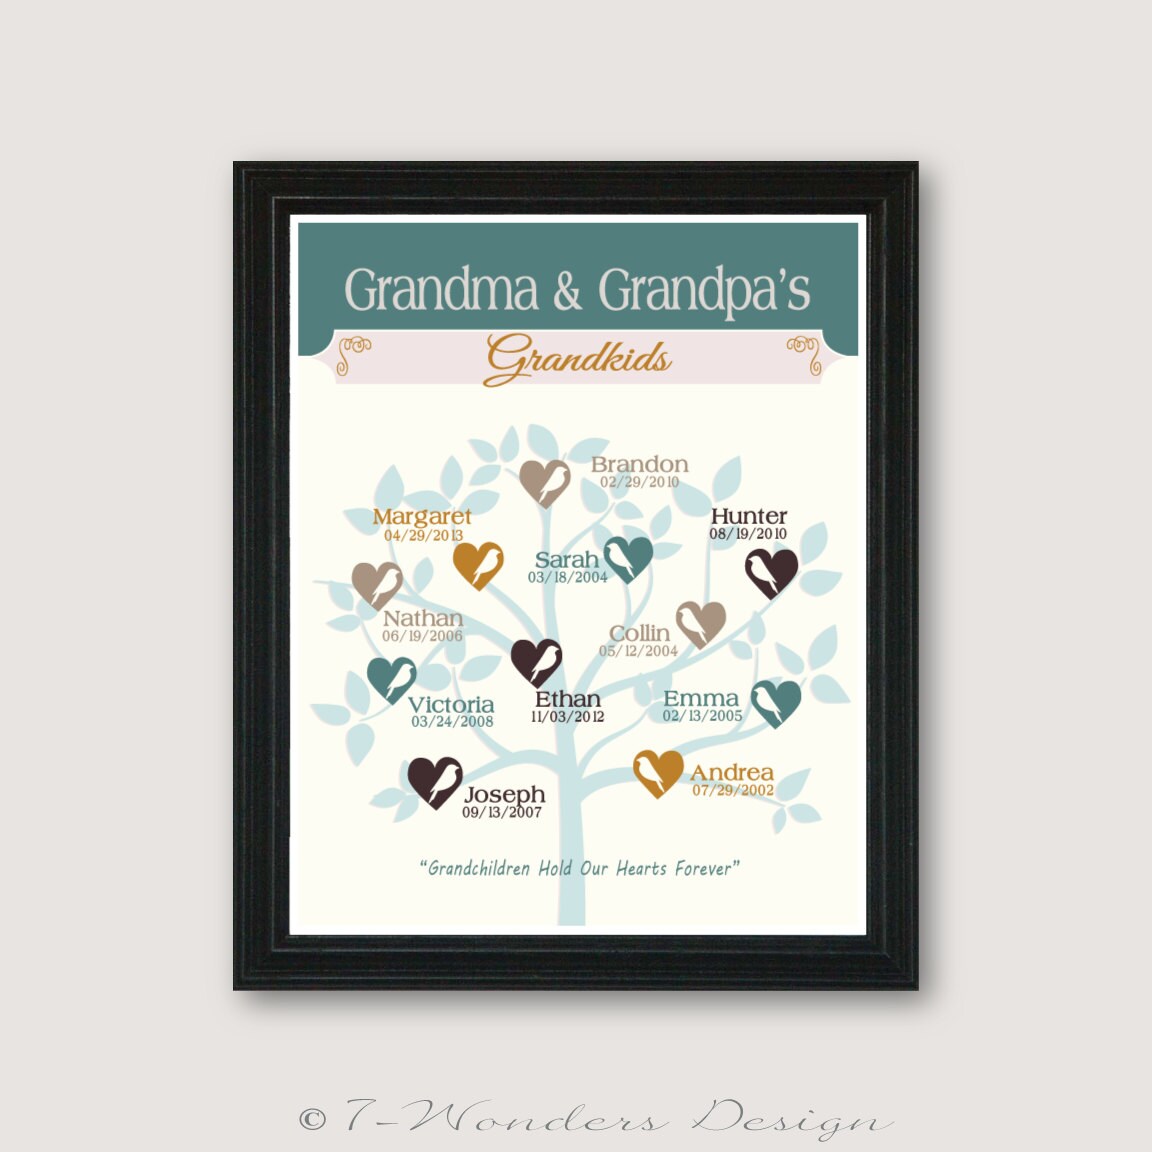 Personalized GRANDPARENTS GIFT Grandma and Grandpa's